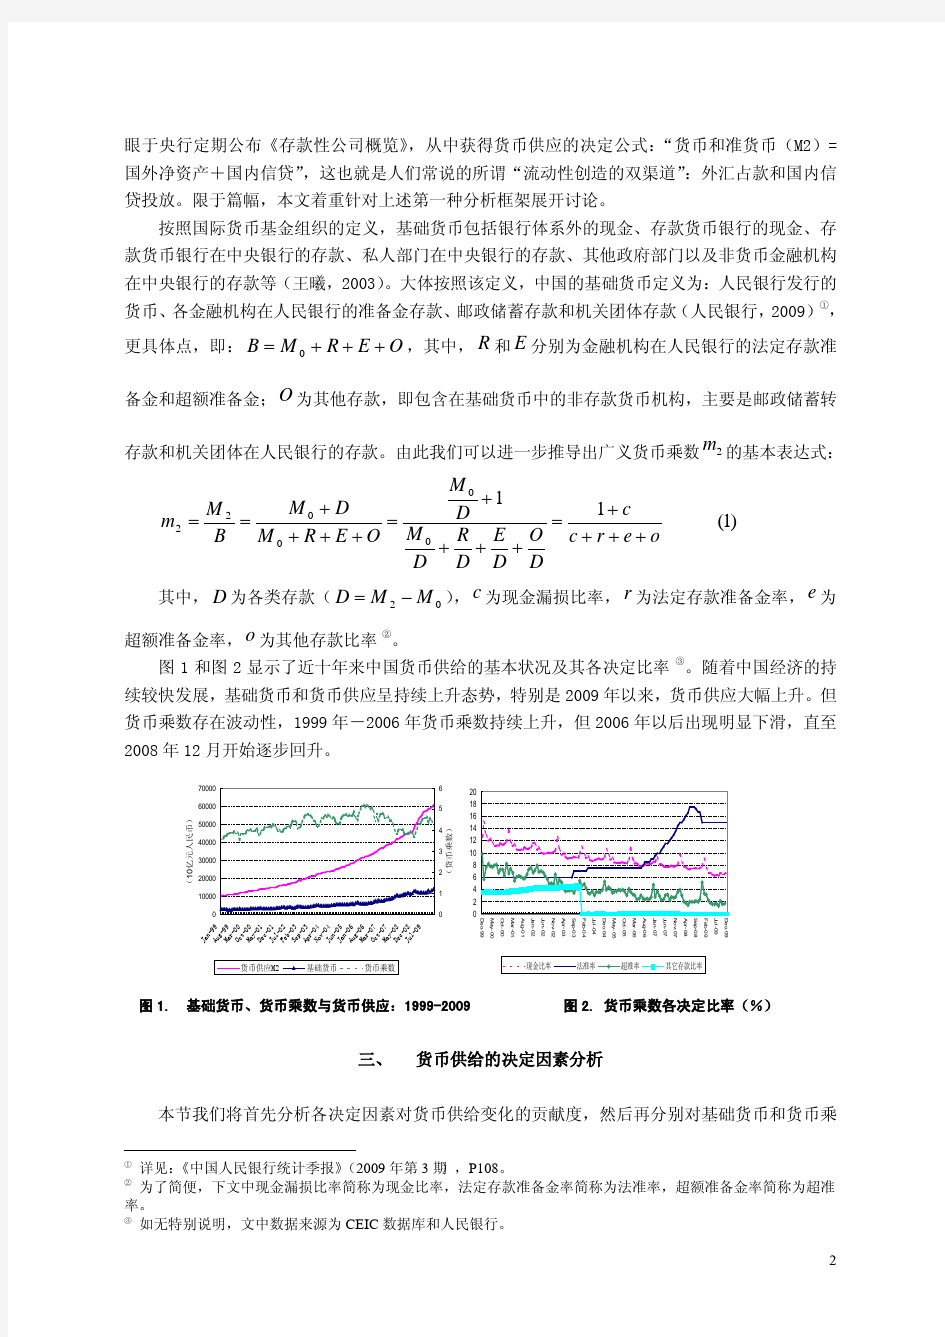 中国货币供给的结构分析：1999-2009 年